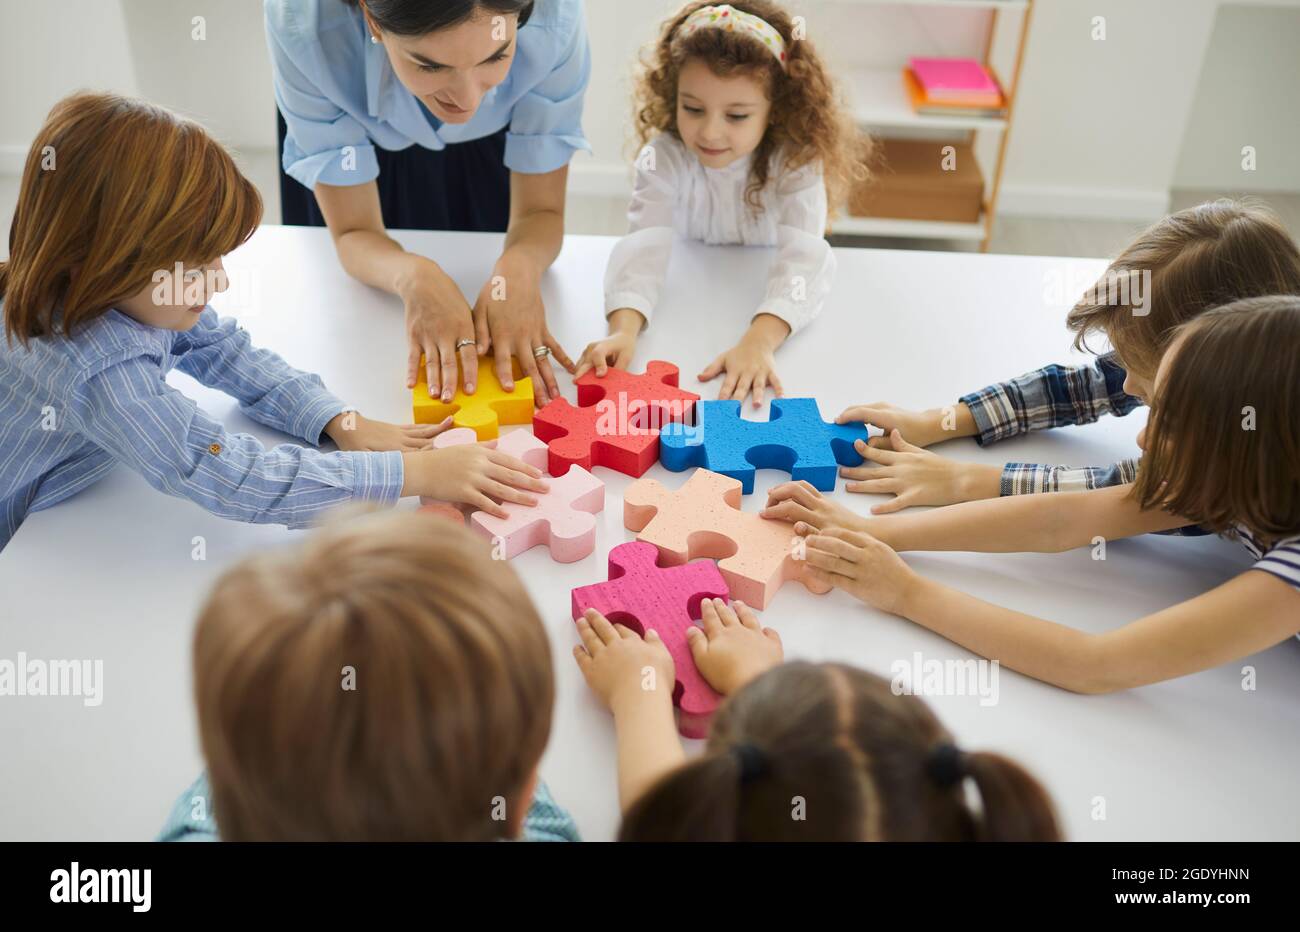 Ein Team von kleinen Schülern mit ihrem Lehrer, das Puzzleteile in einer Lektion zusammenfügt Stockfoto